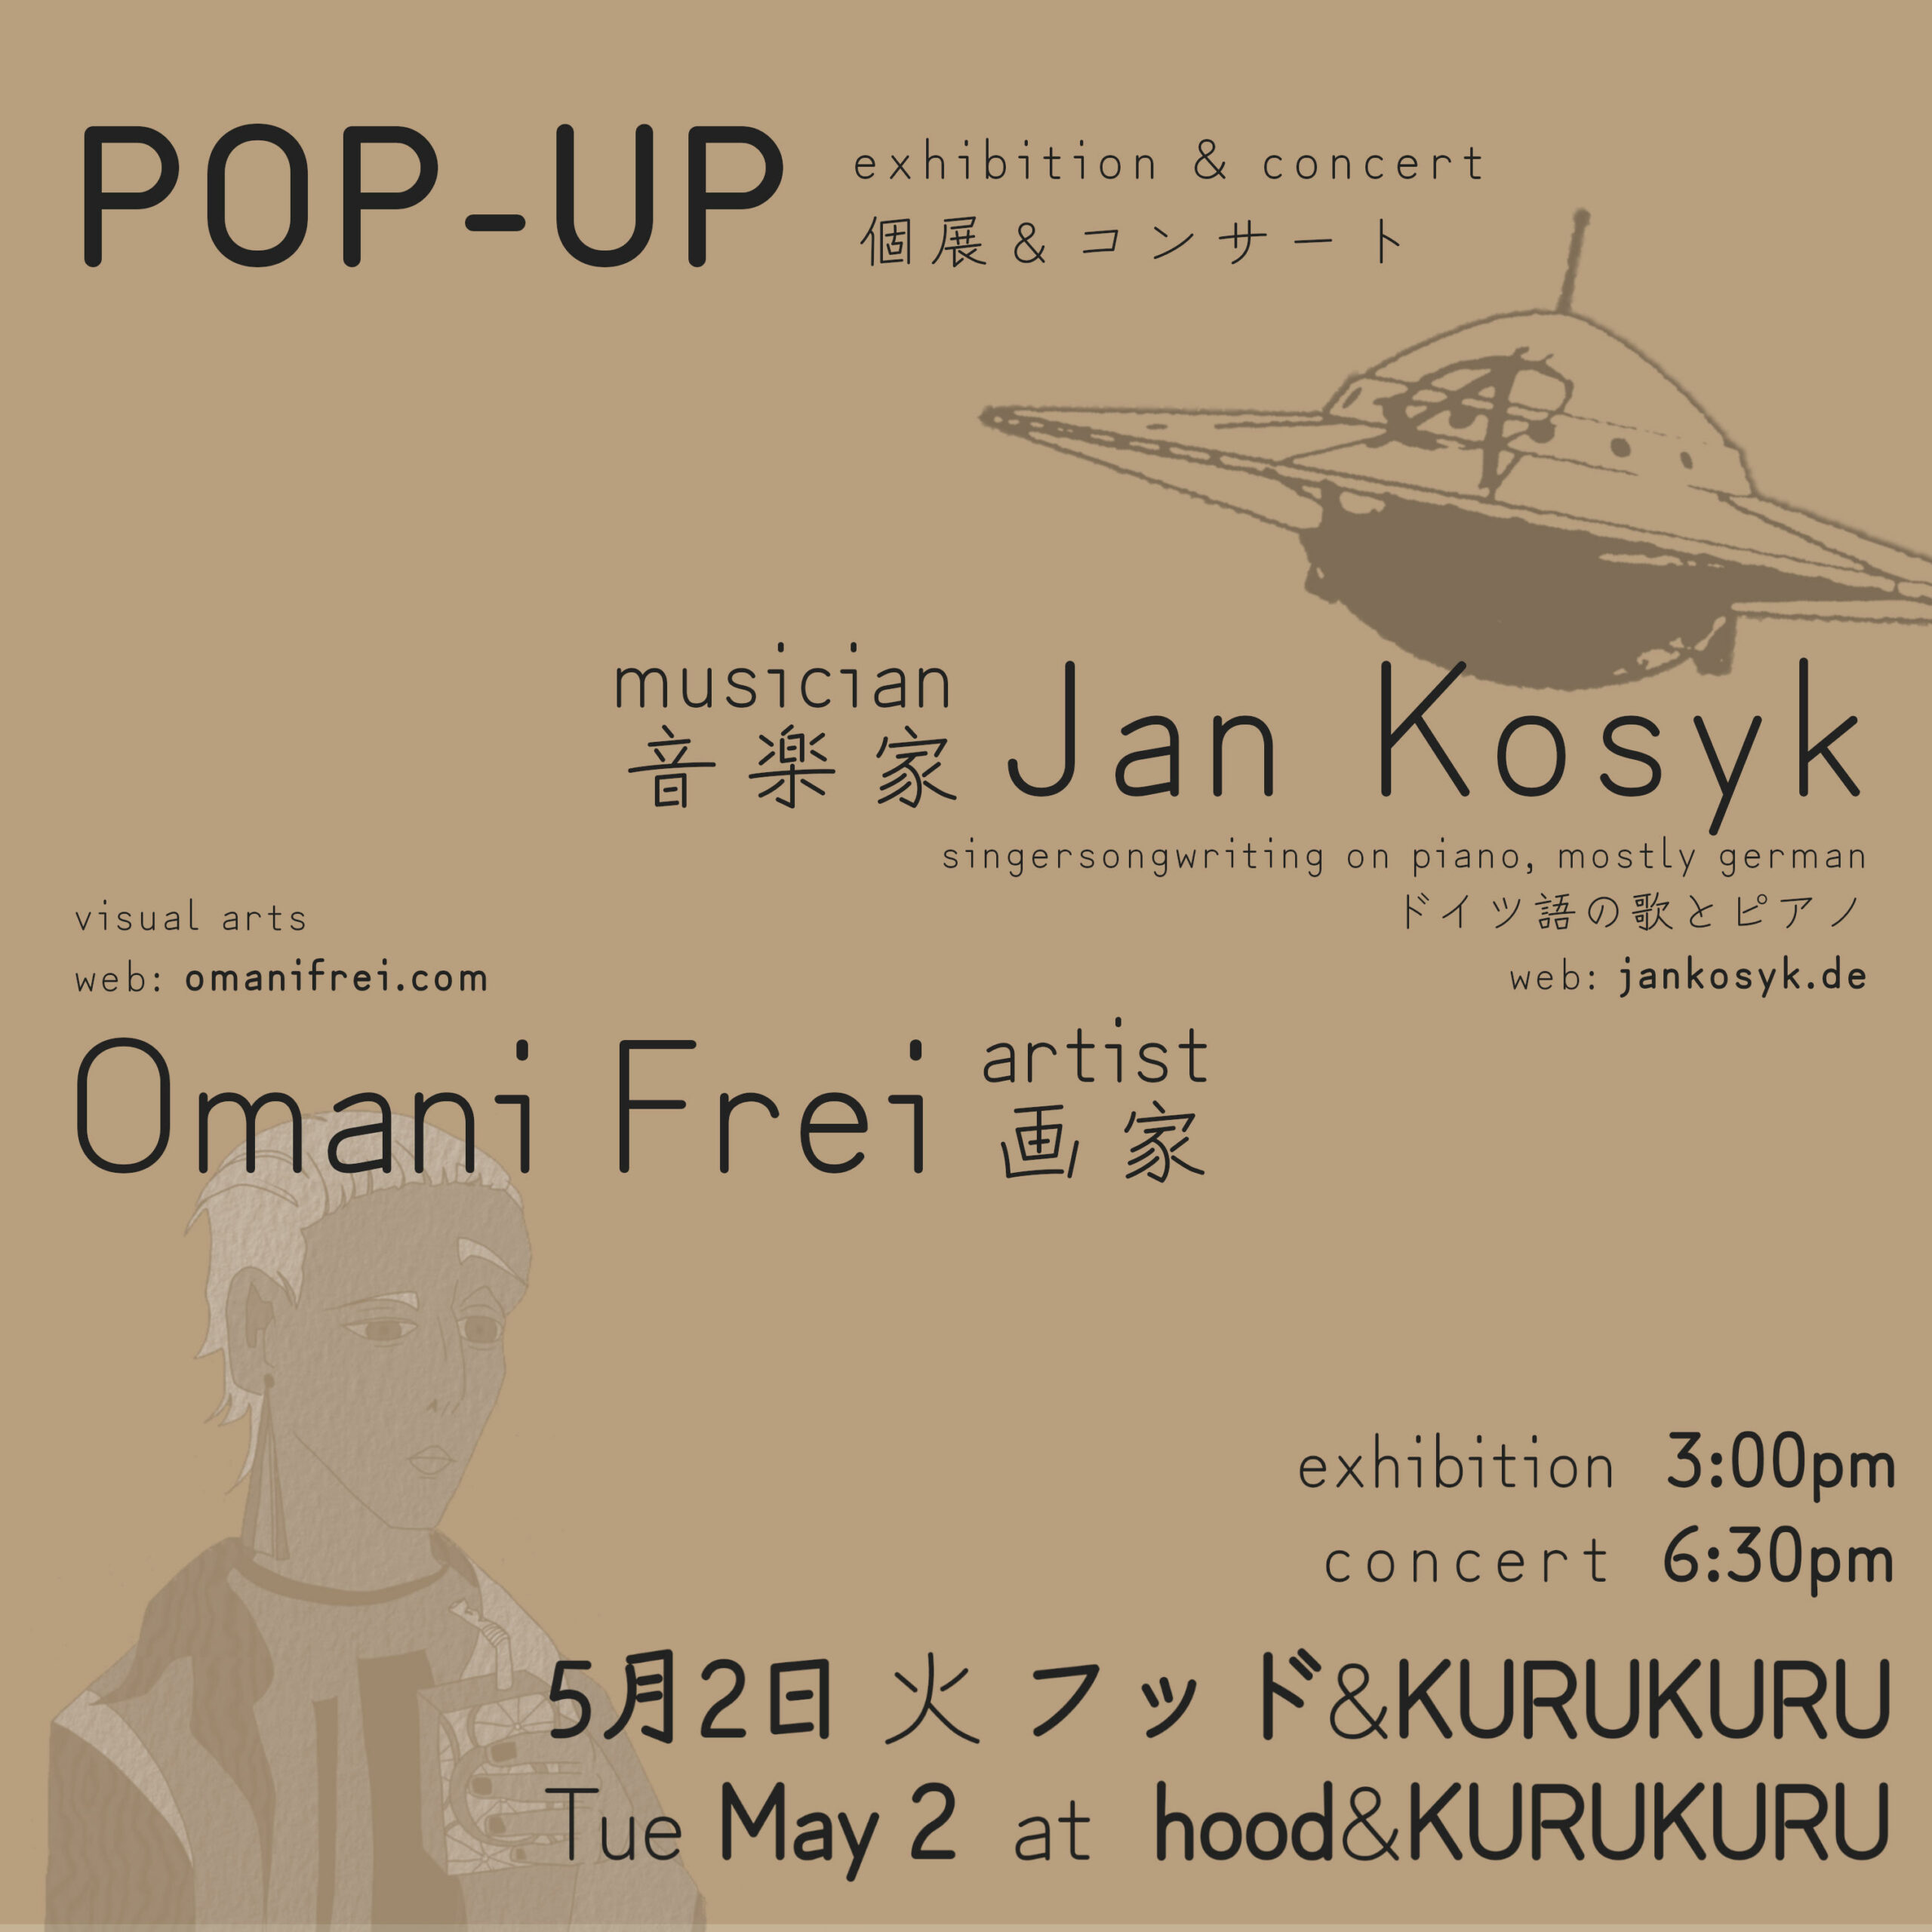 POP-UP exhibition & concert